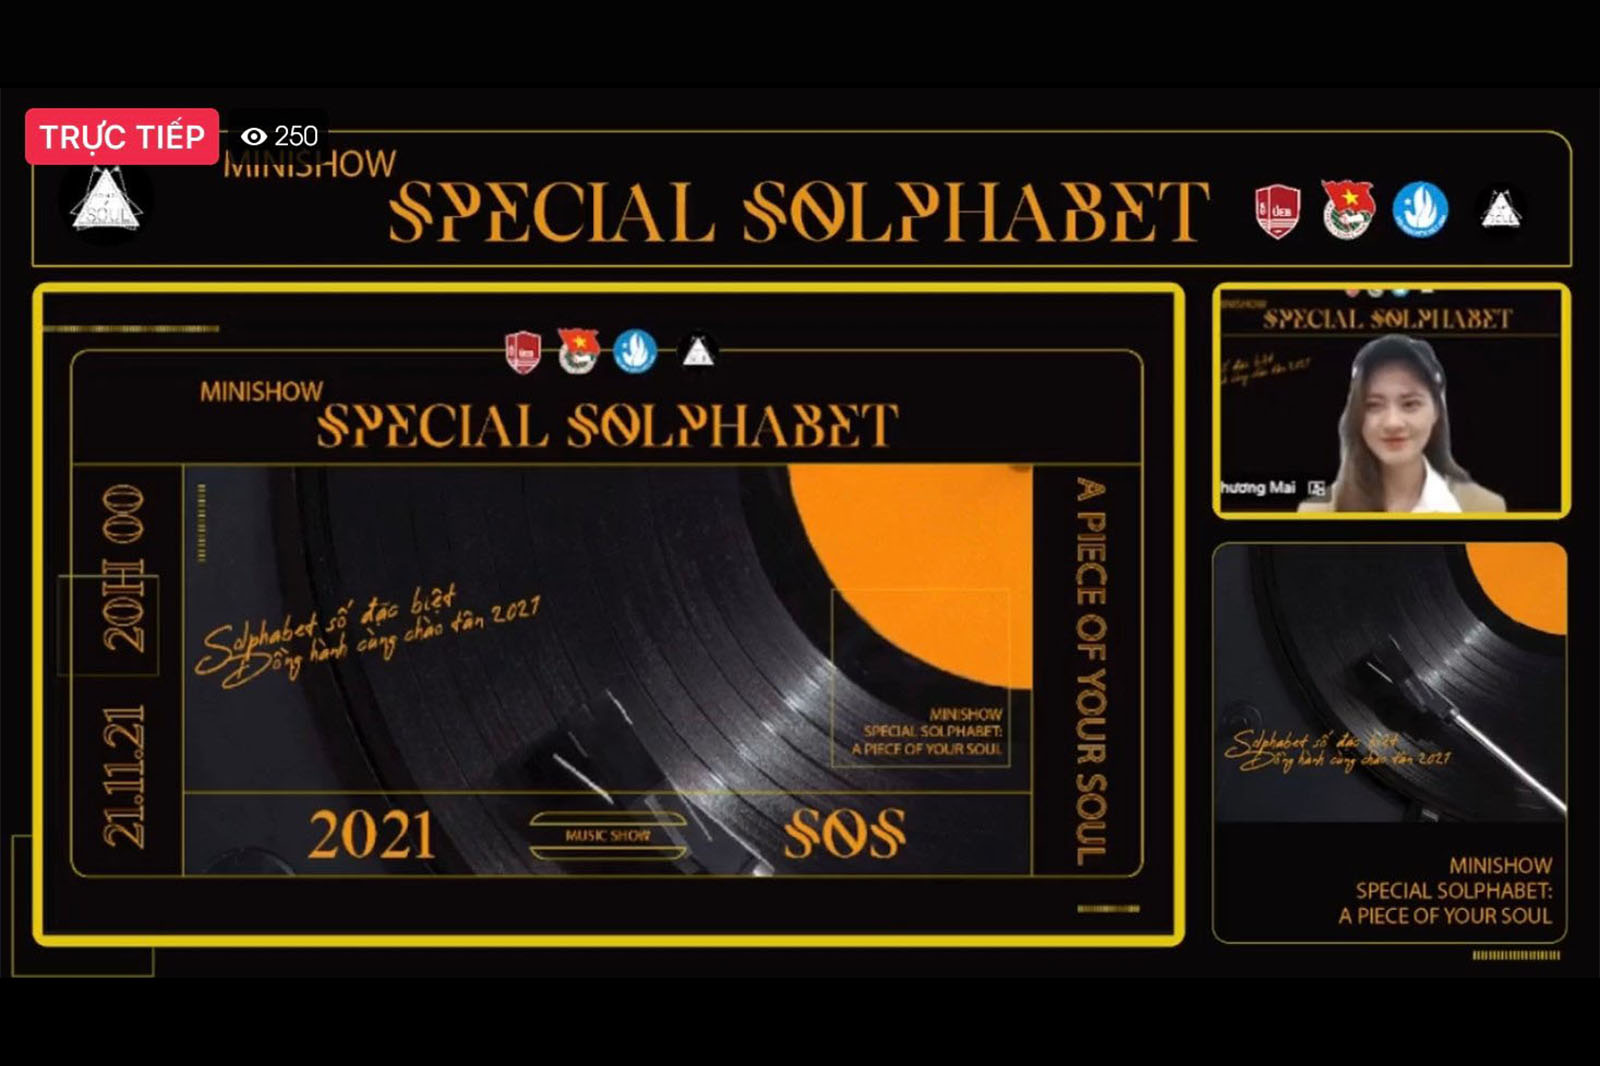 “Special Solphabet: A Piece Of Your Soul” – đêm nhạc kết nối những mảnh ghép tâm hồn